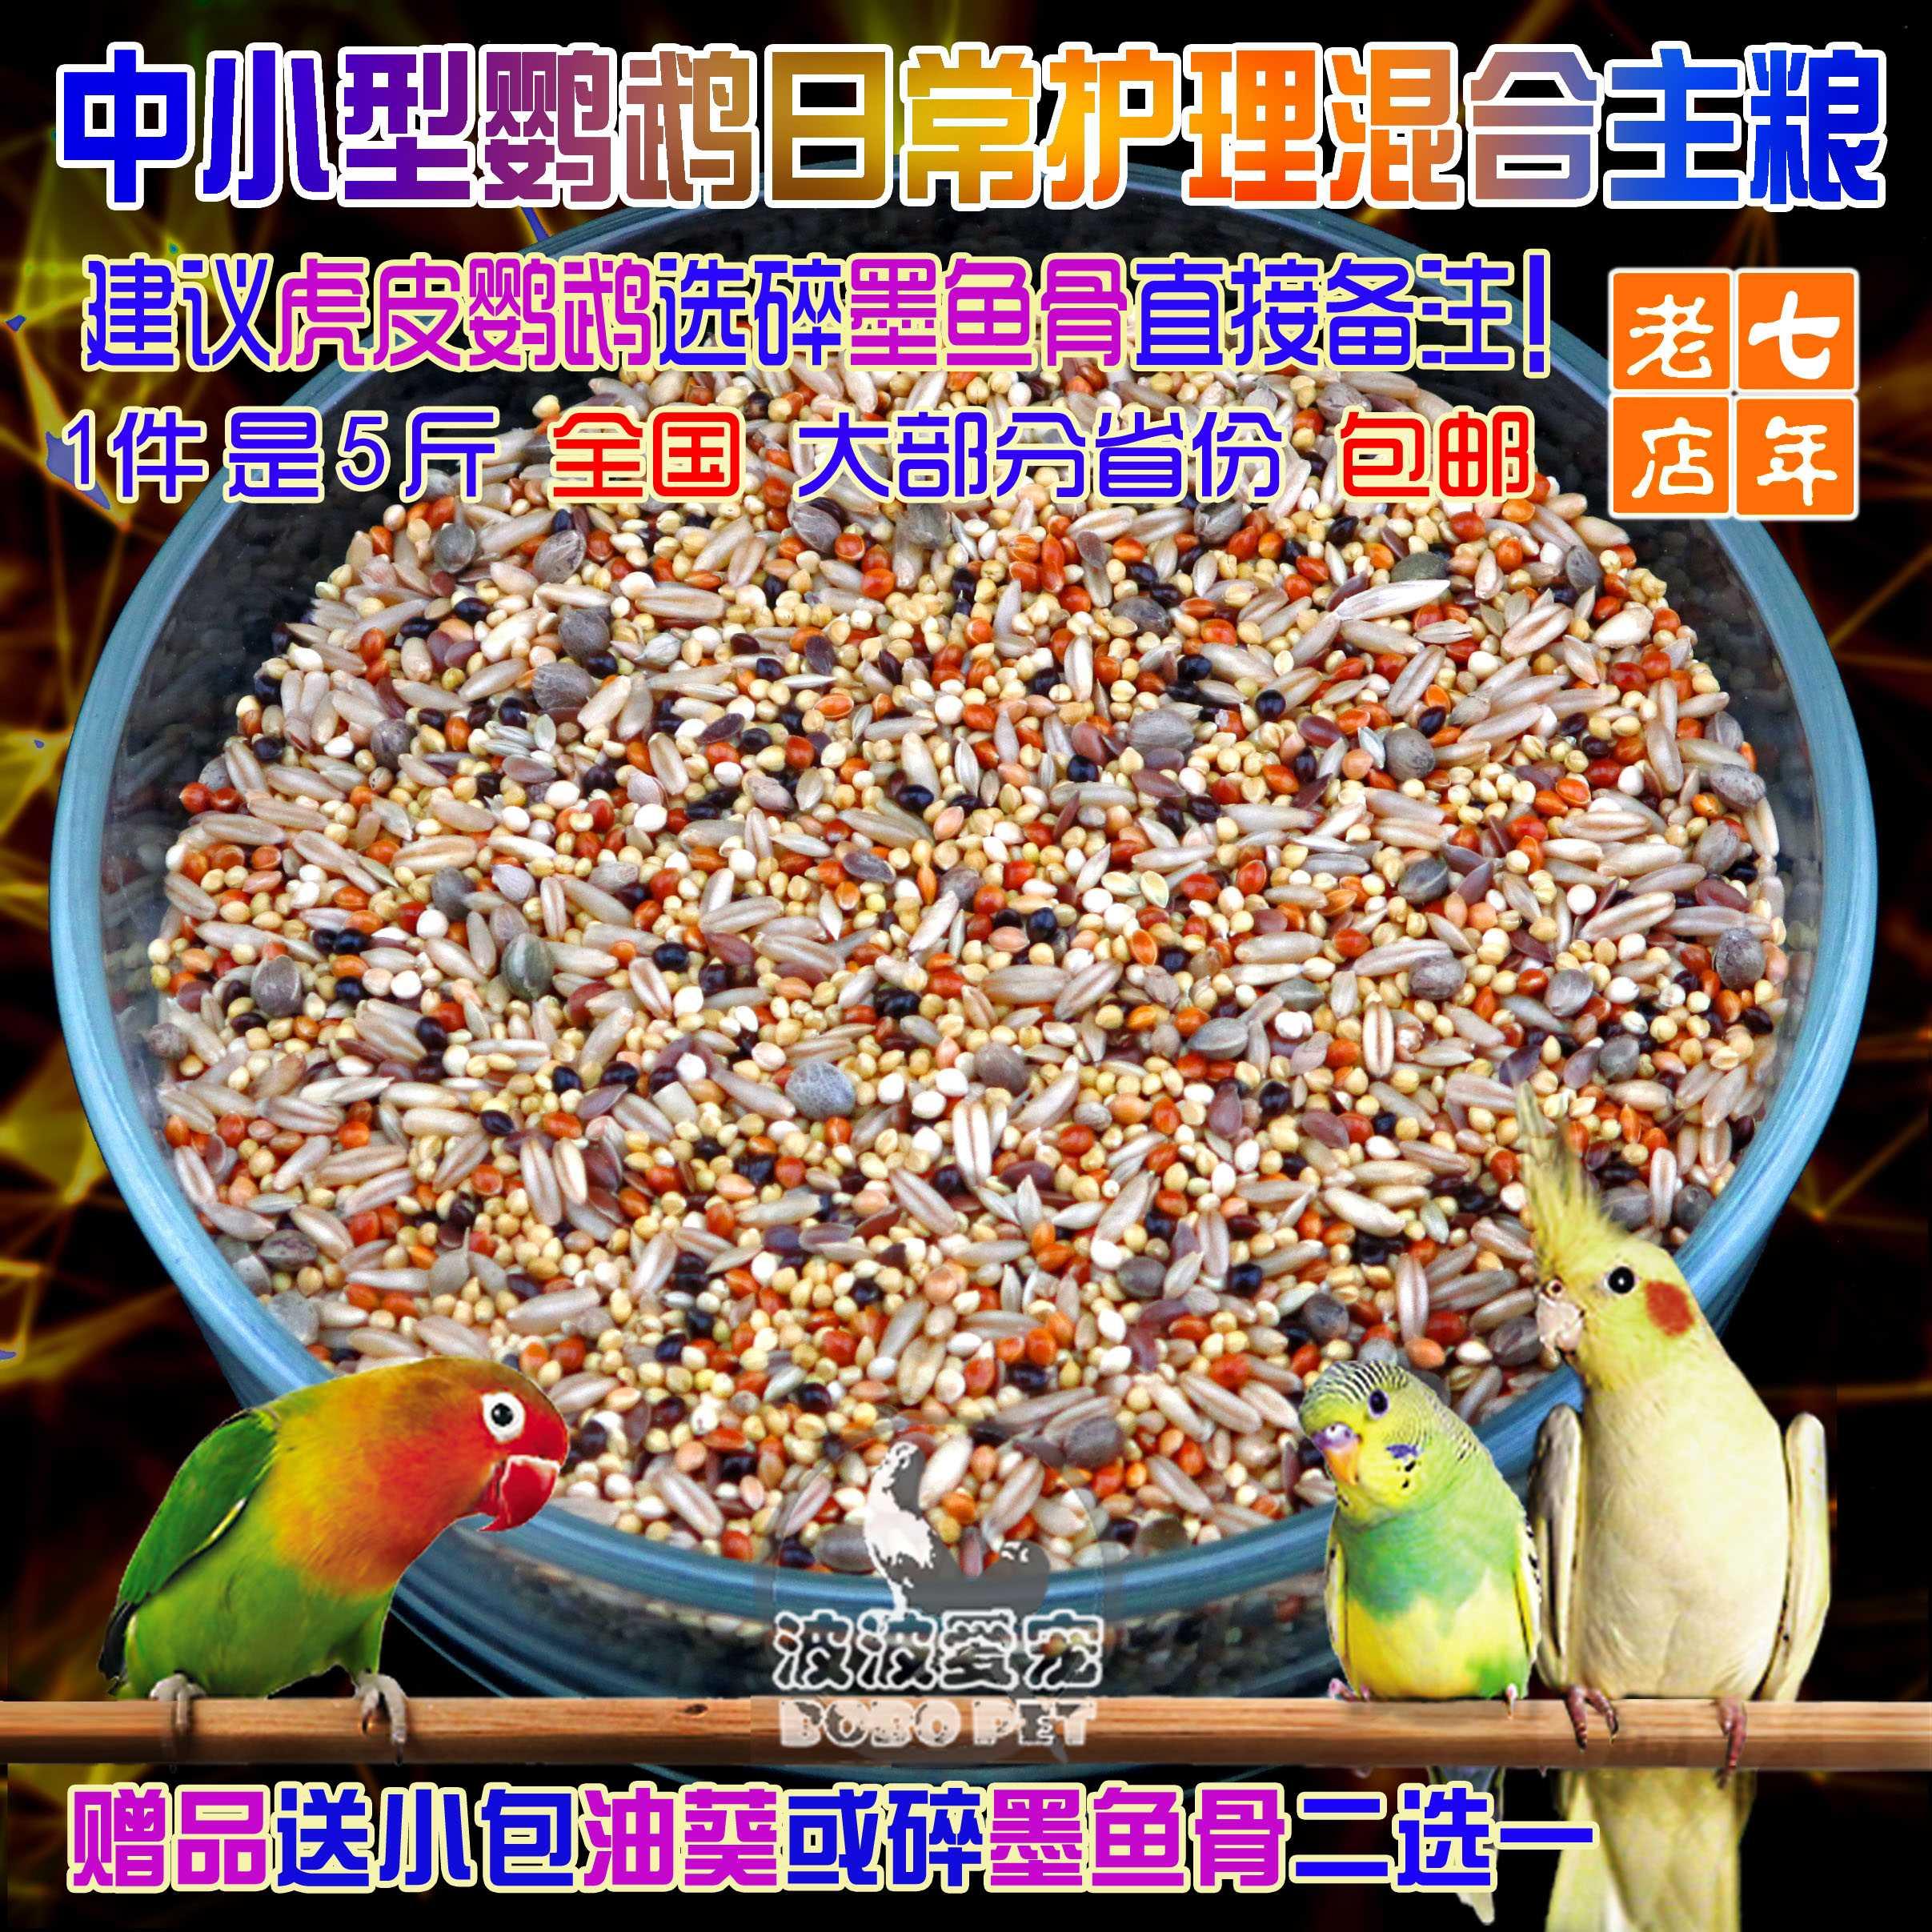 虎皮牡丹玄凤玫瑰中小型鹦鹉饲料鸟粮五色黍子混合粮谷子包邮5斤